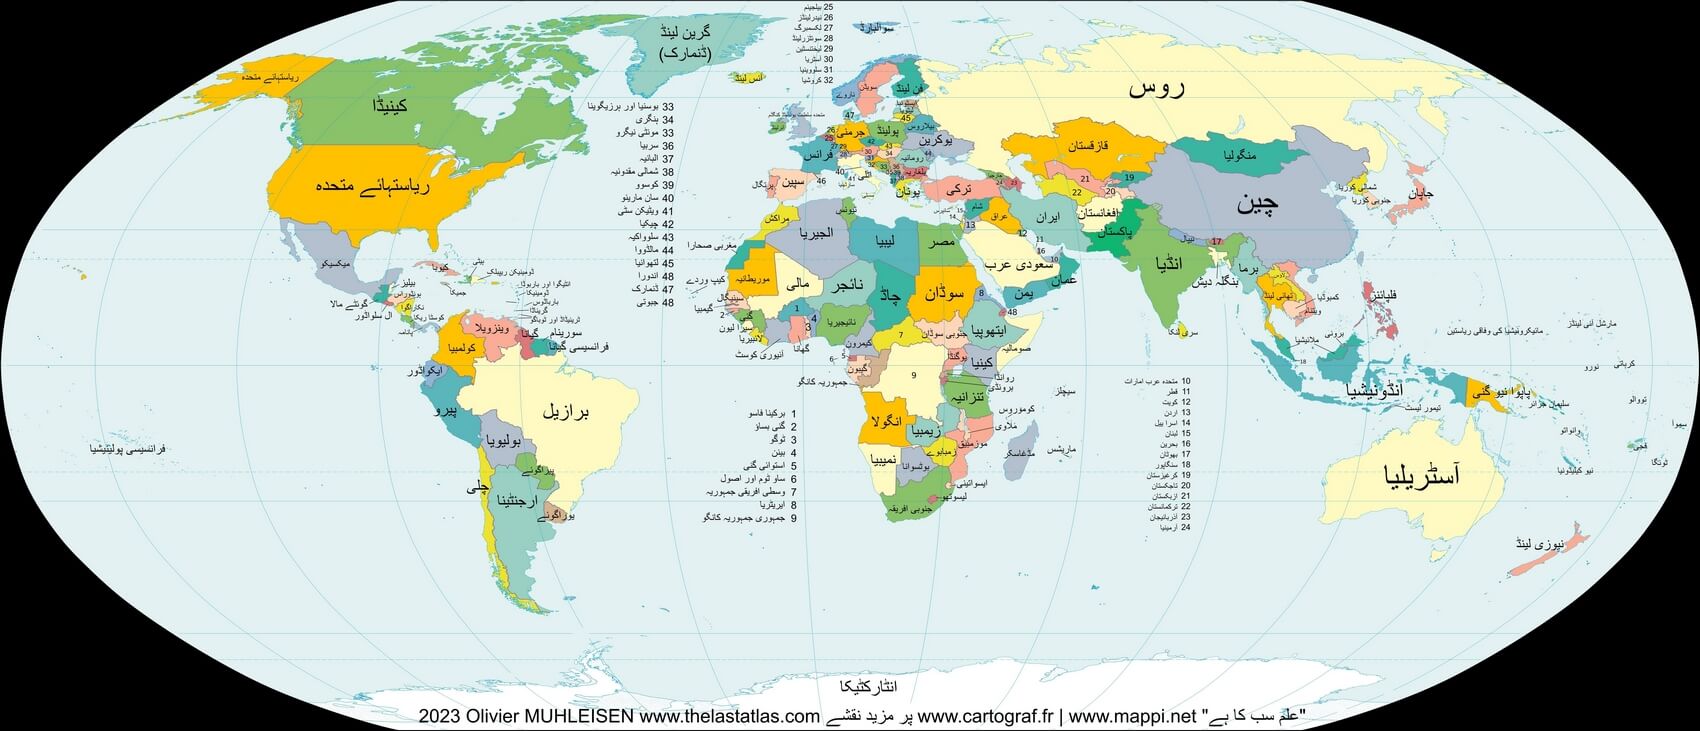 Mapa mundi com países em urdu